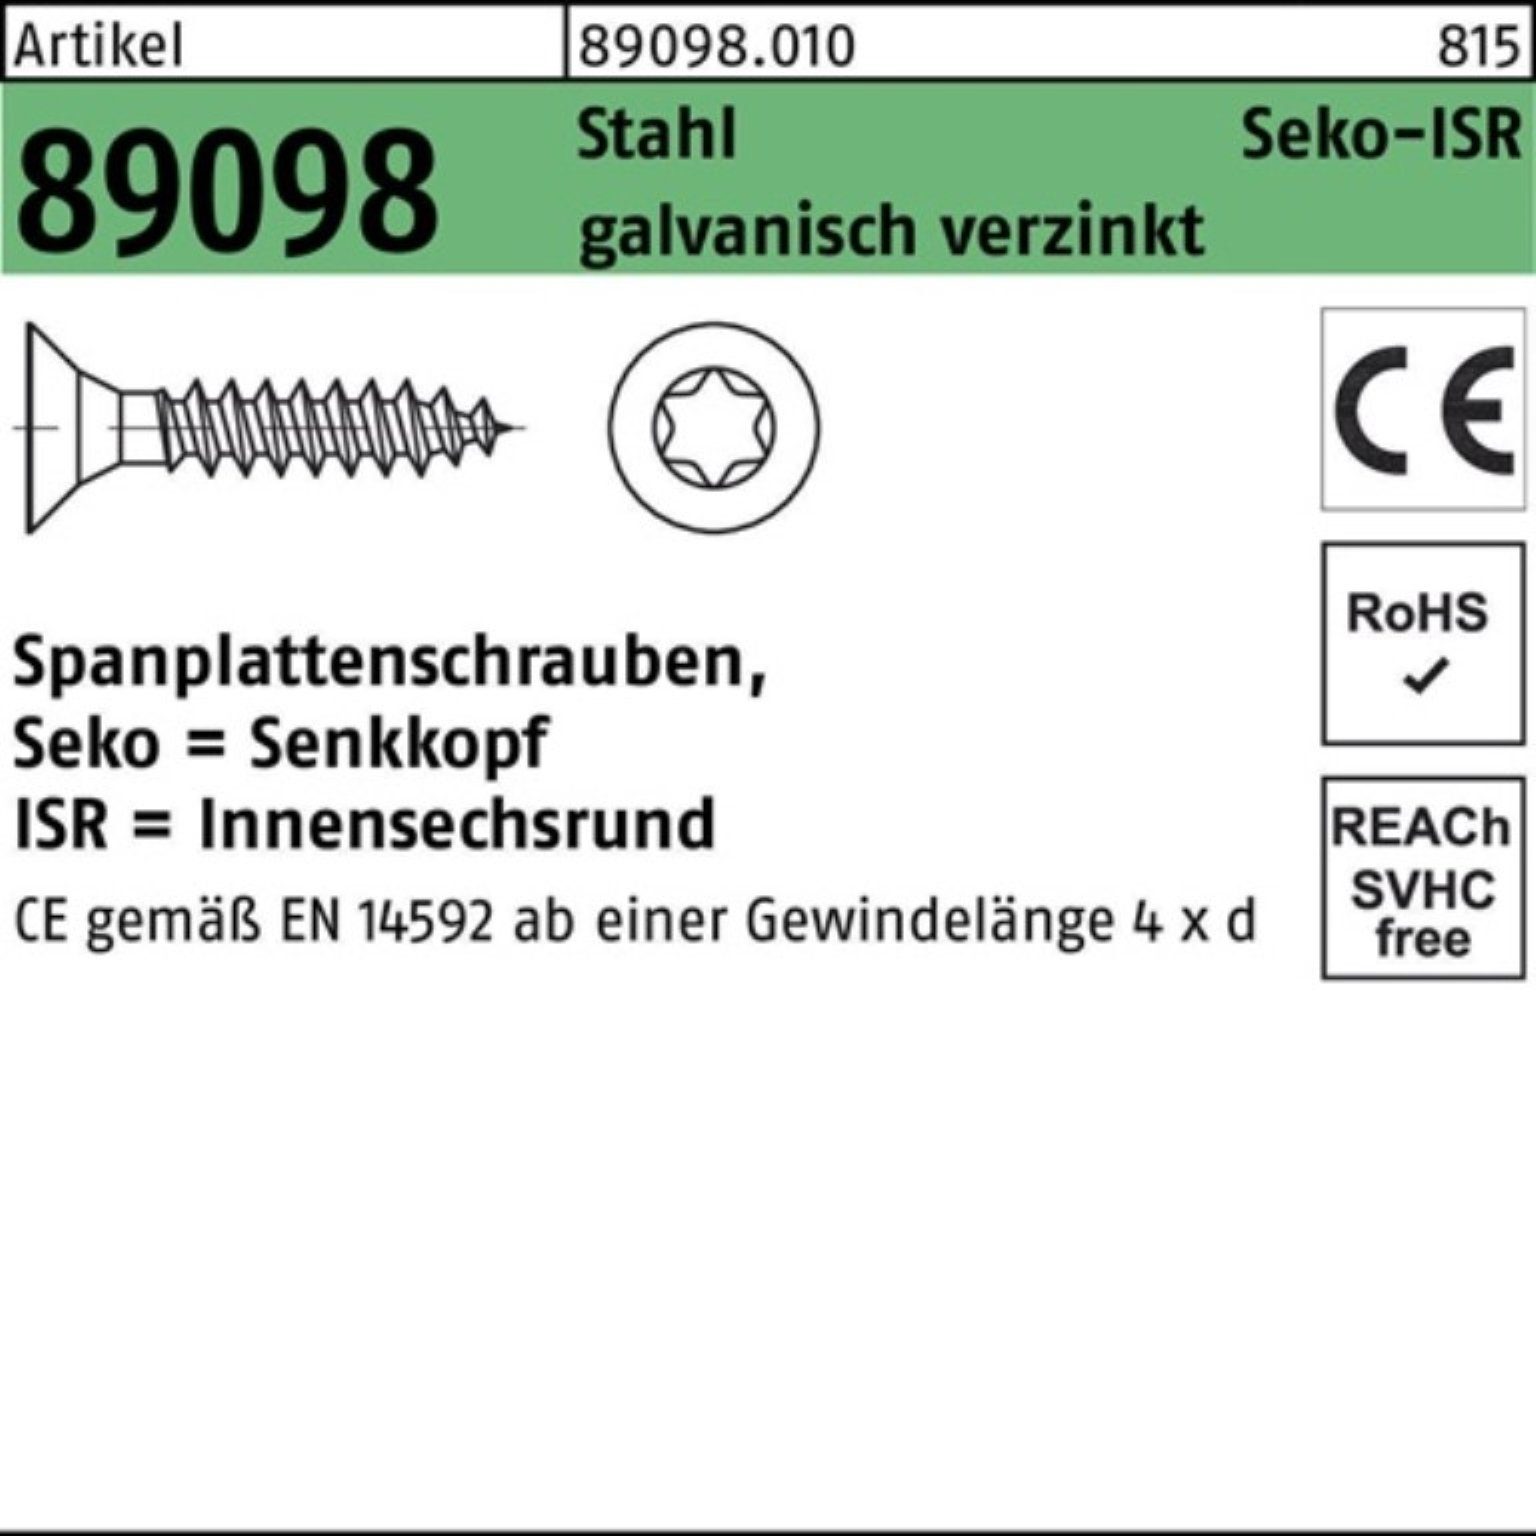 Reyher Spanplattenschraube 1000er R Pack Stahl VG gal ISR Spanplattenschraube 89098 4x50-T20 SEKO